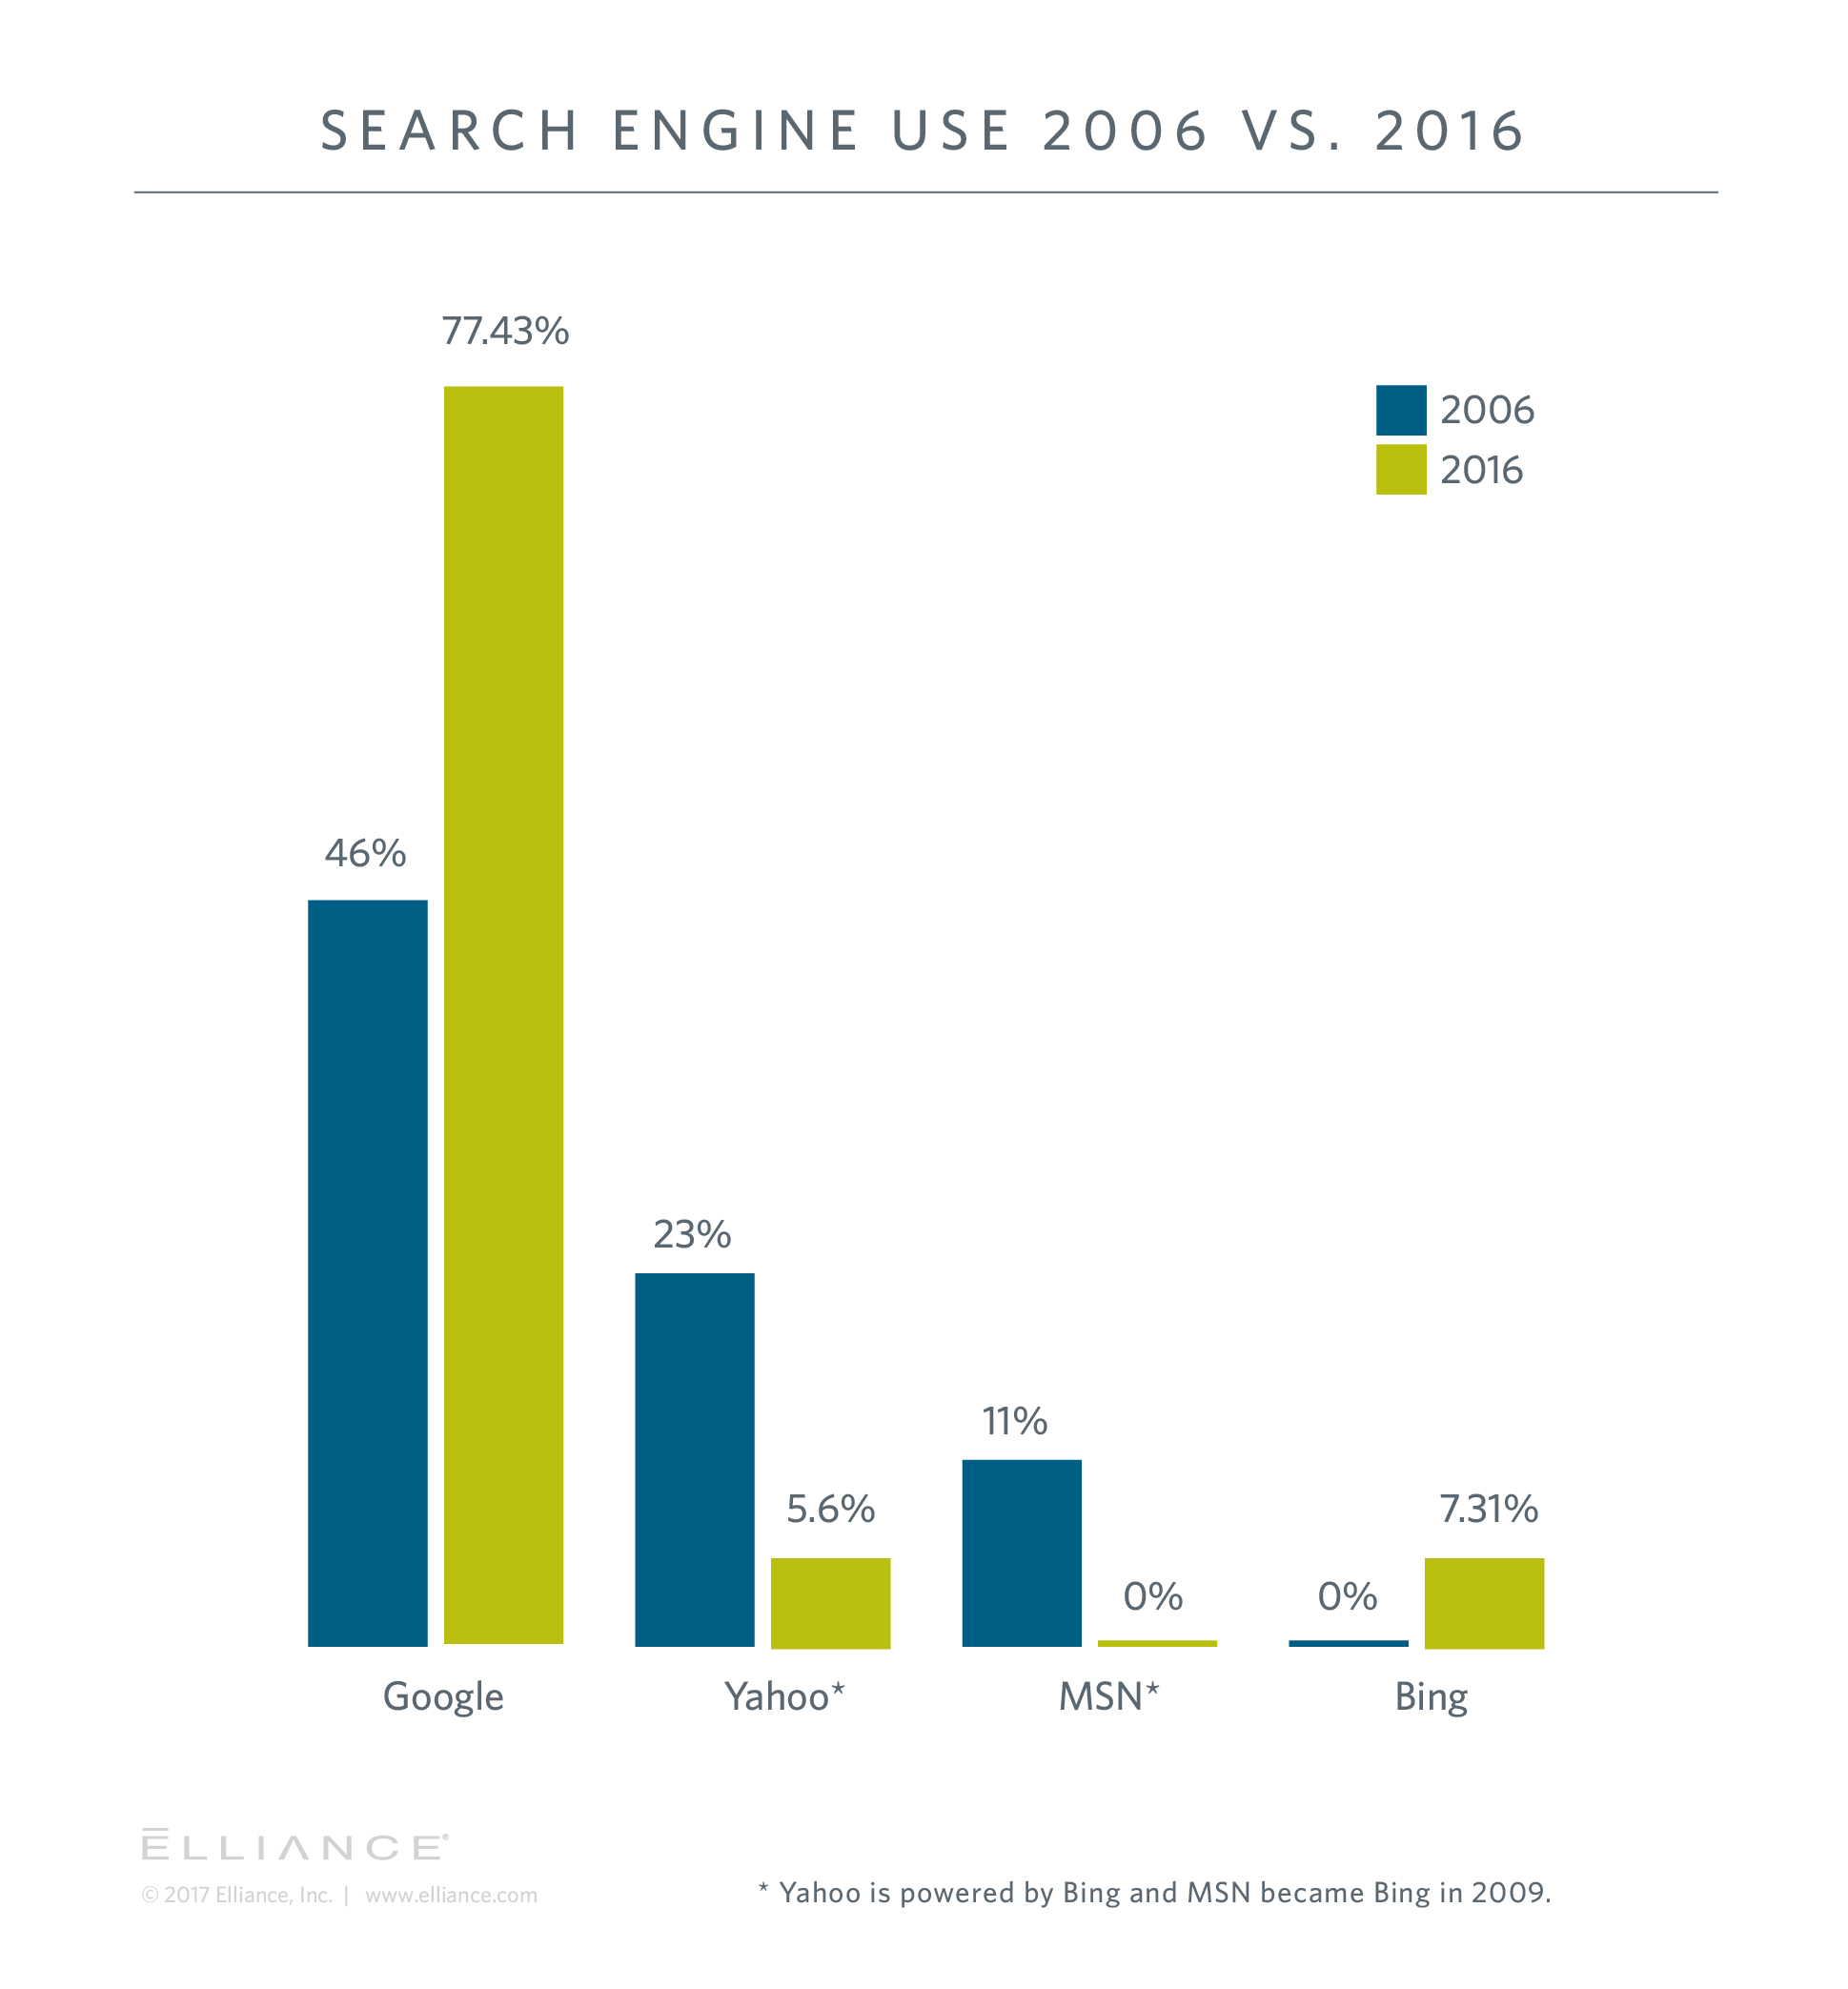 Search Market Share Comparison